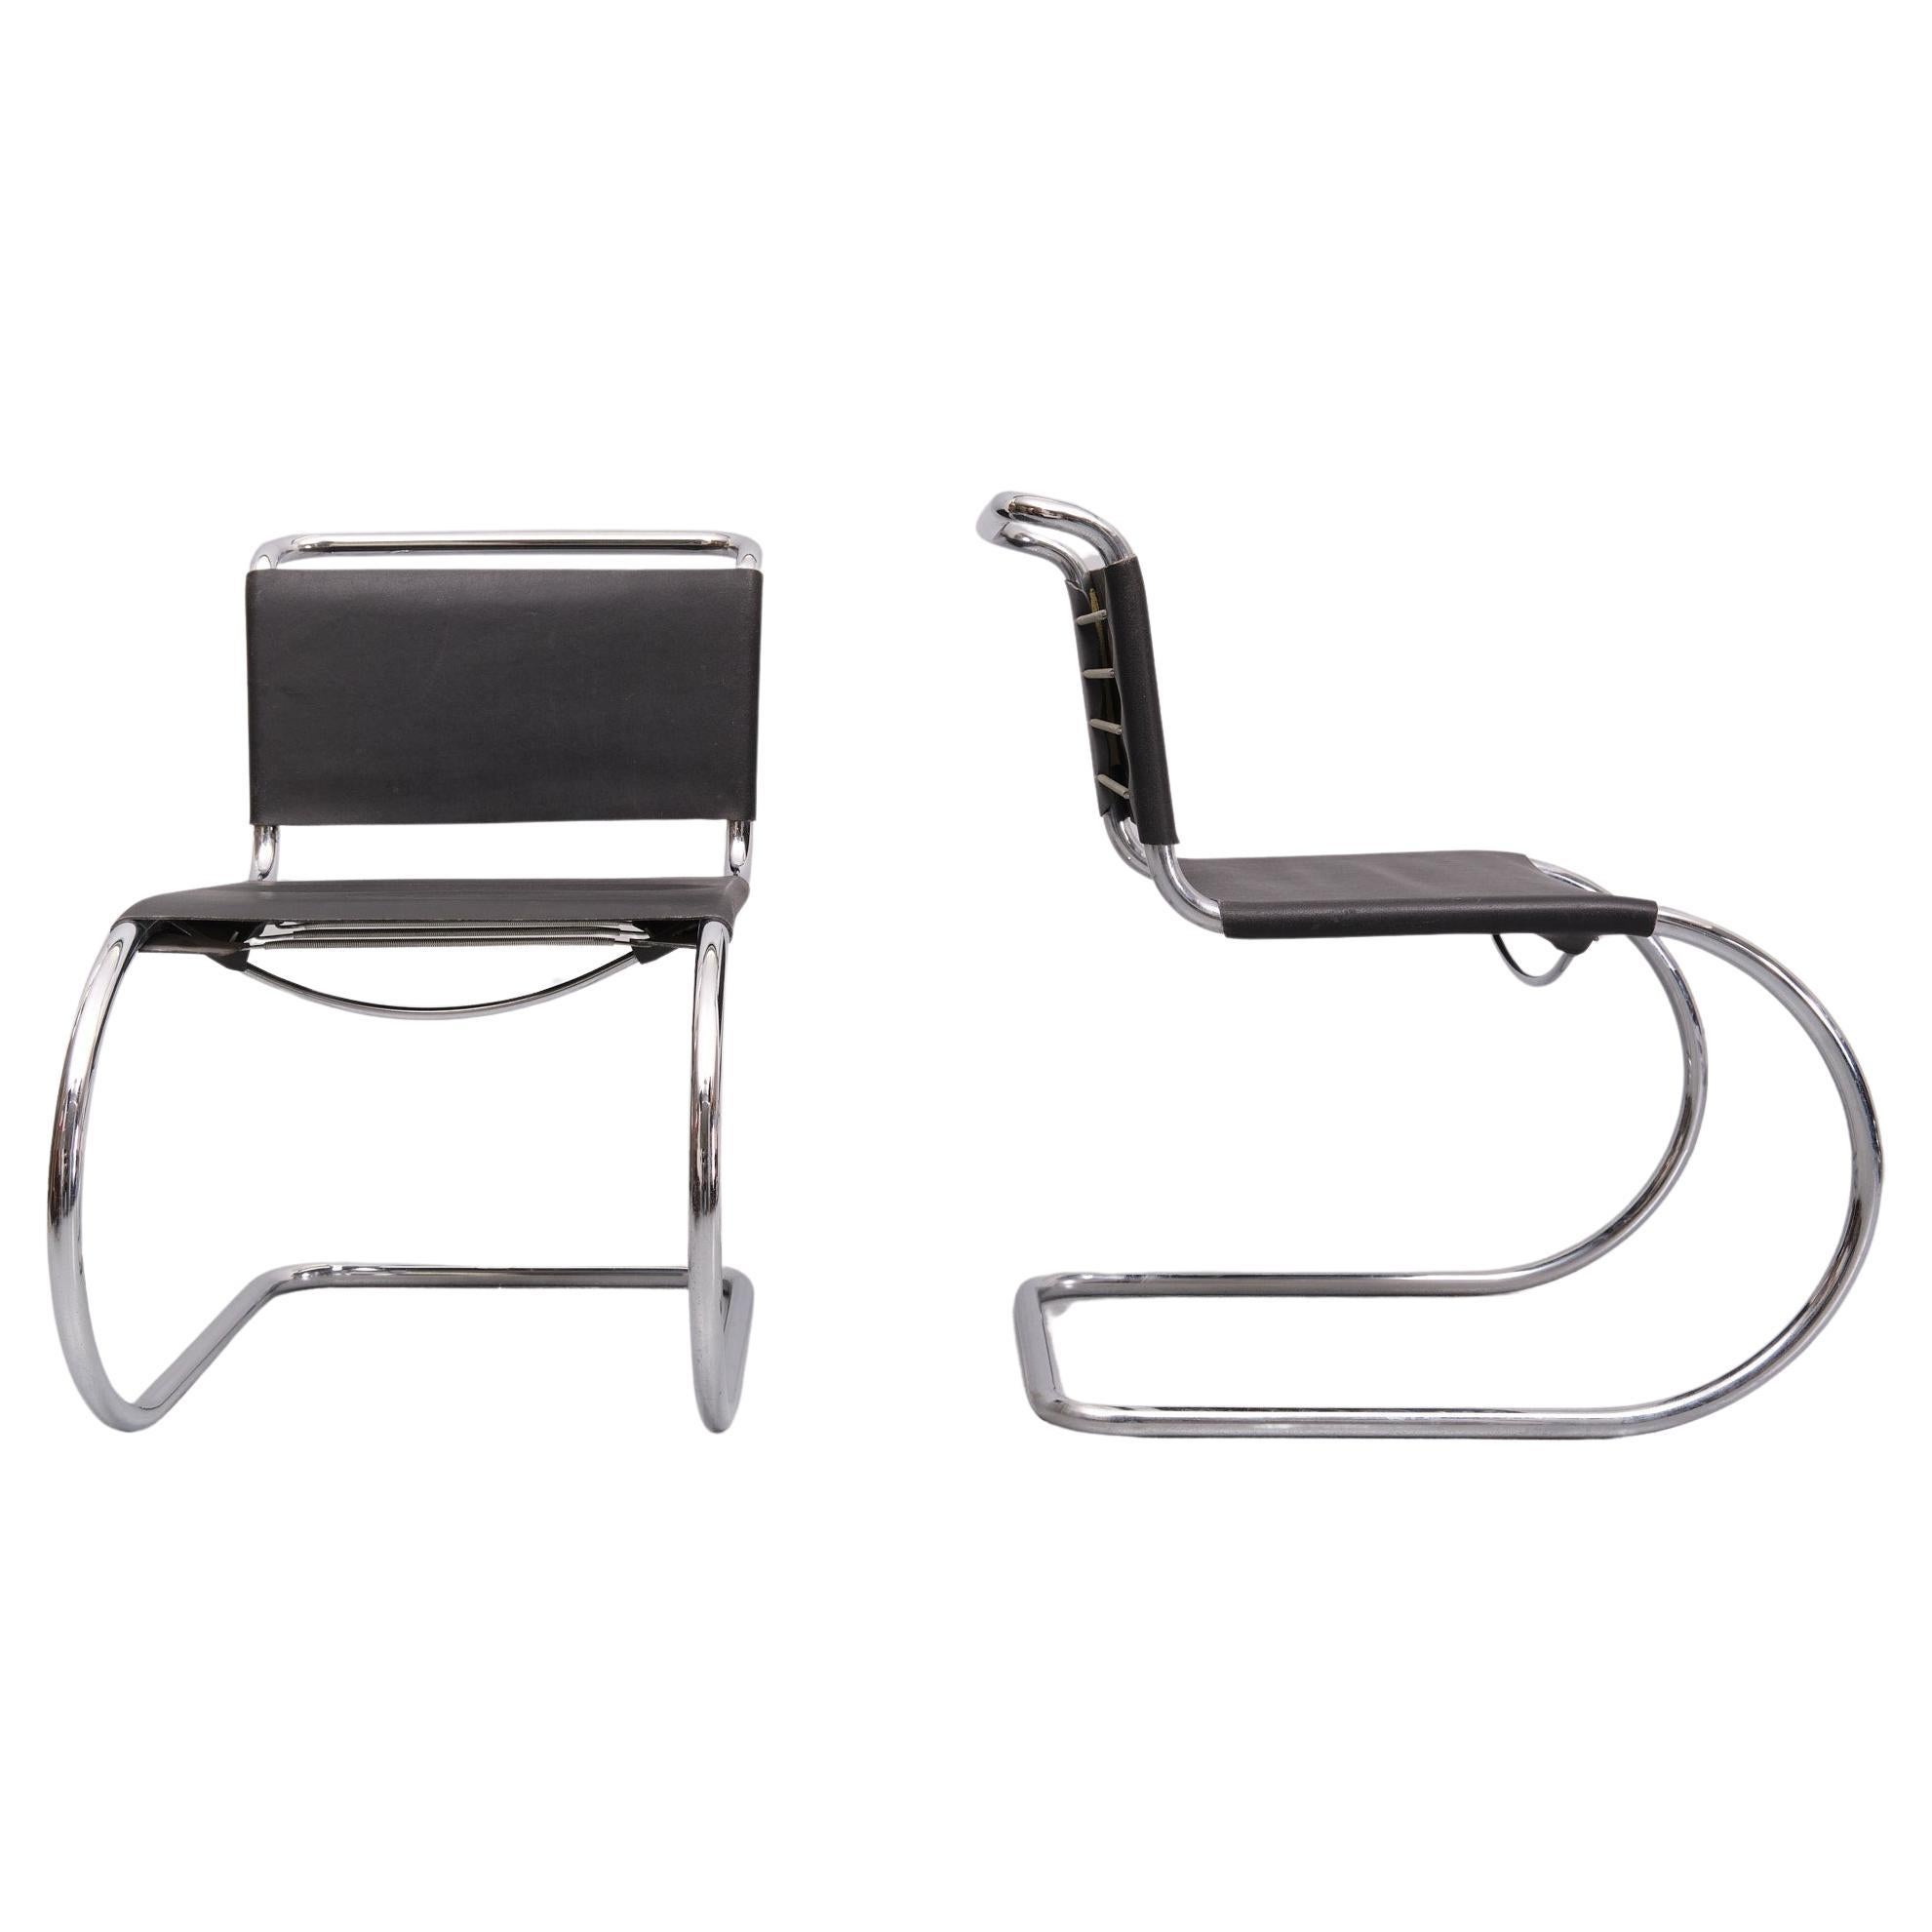 Deux chaises luge emblématiques MR10 . Design/One par Ludwig Mies van der Rohe 
Cadre en tube chromé, avec revêtement en cuir noir. 
Cet ensemble de chaises est un exemple du début des années 1960 de son célèbre design. La chaise MR10 a été conçue